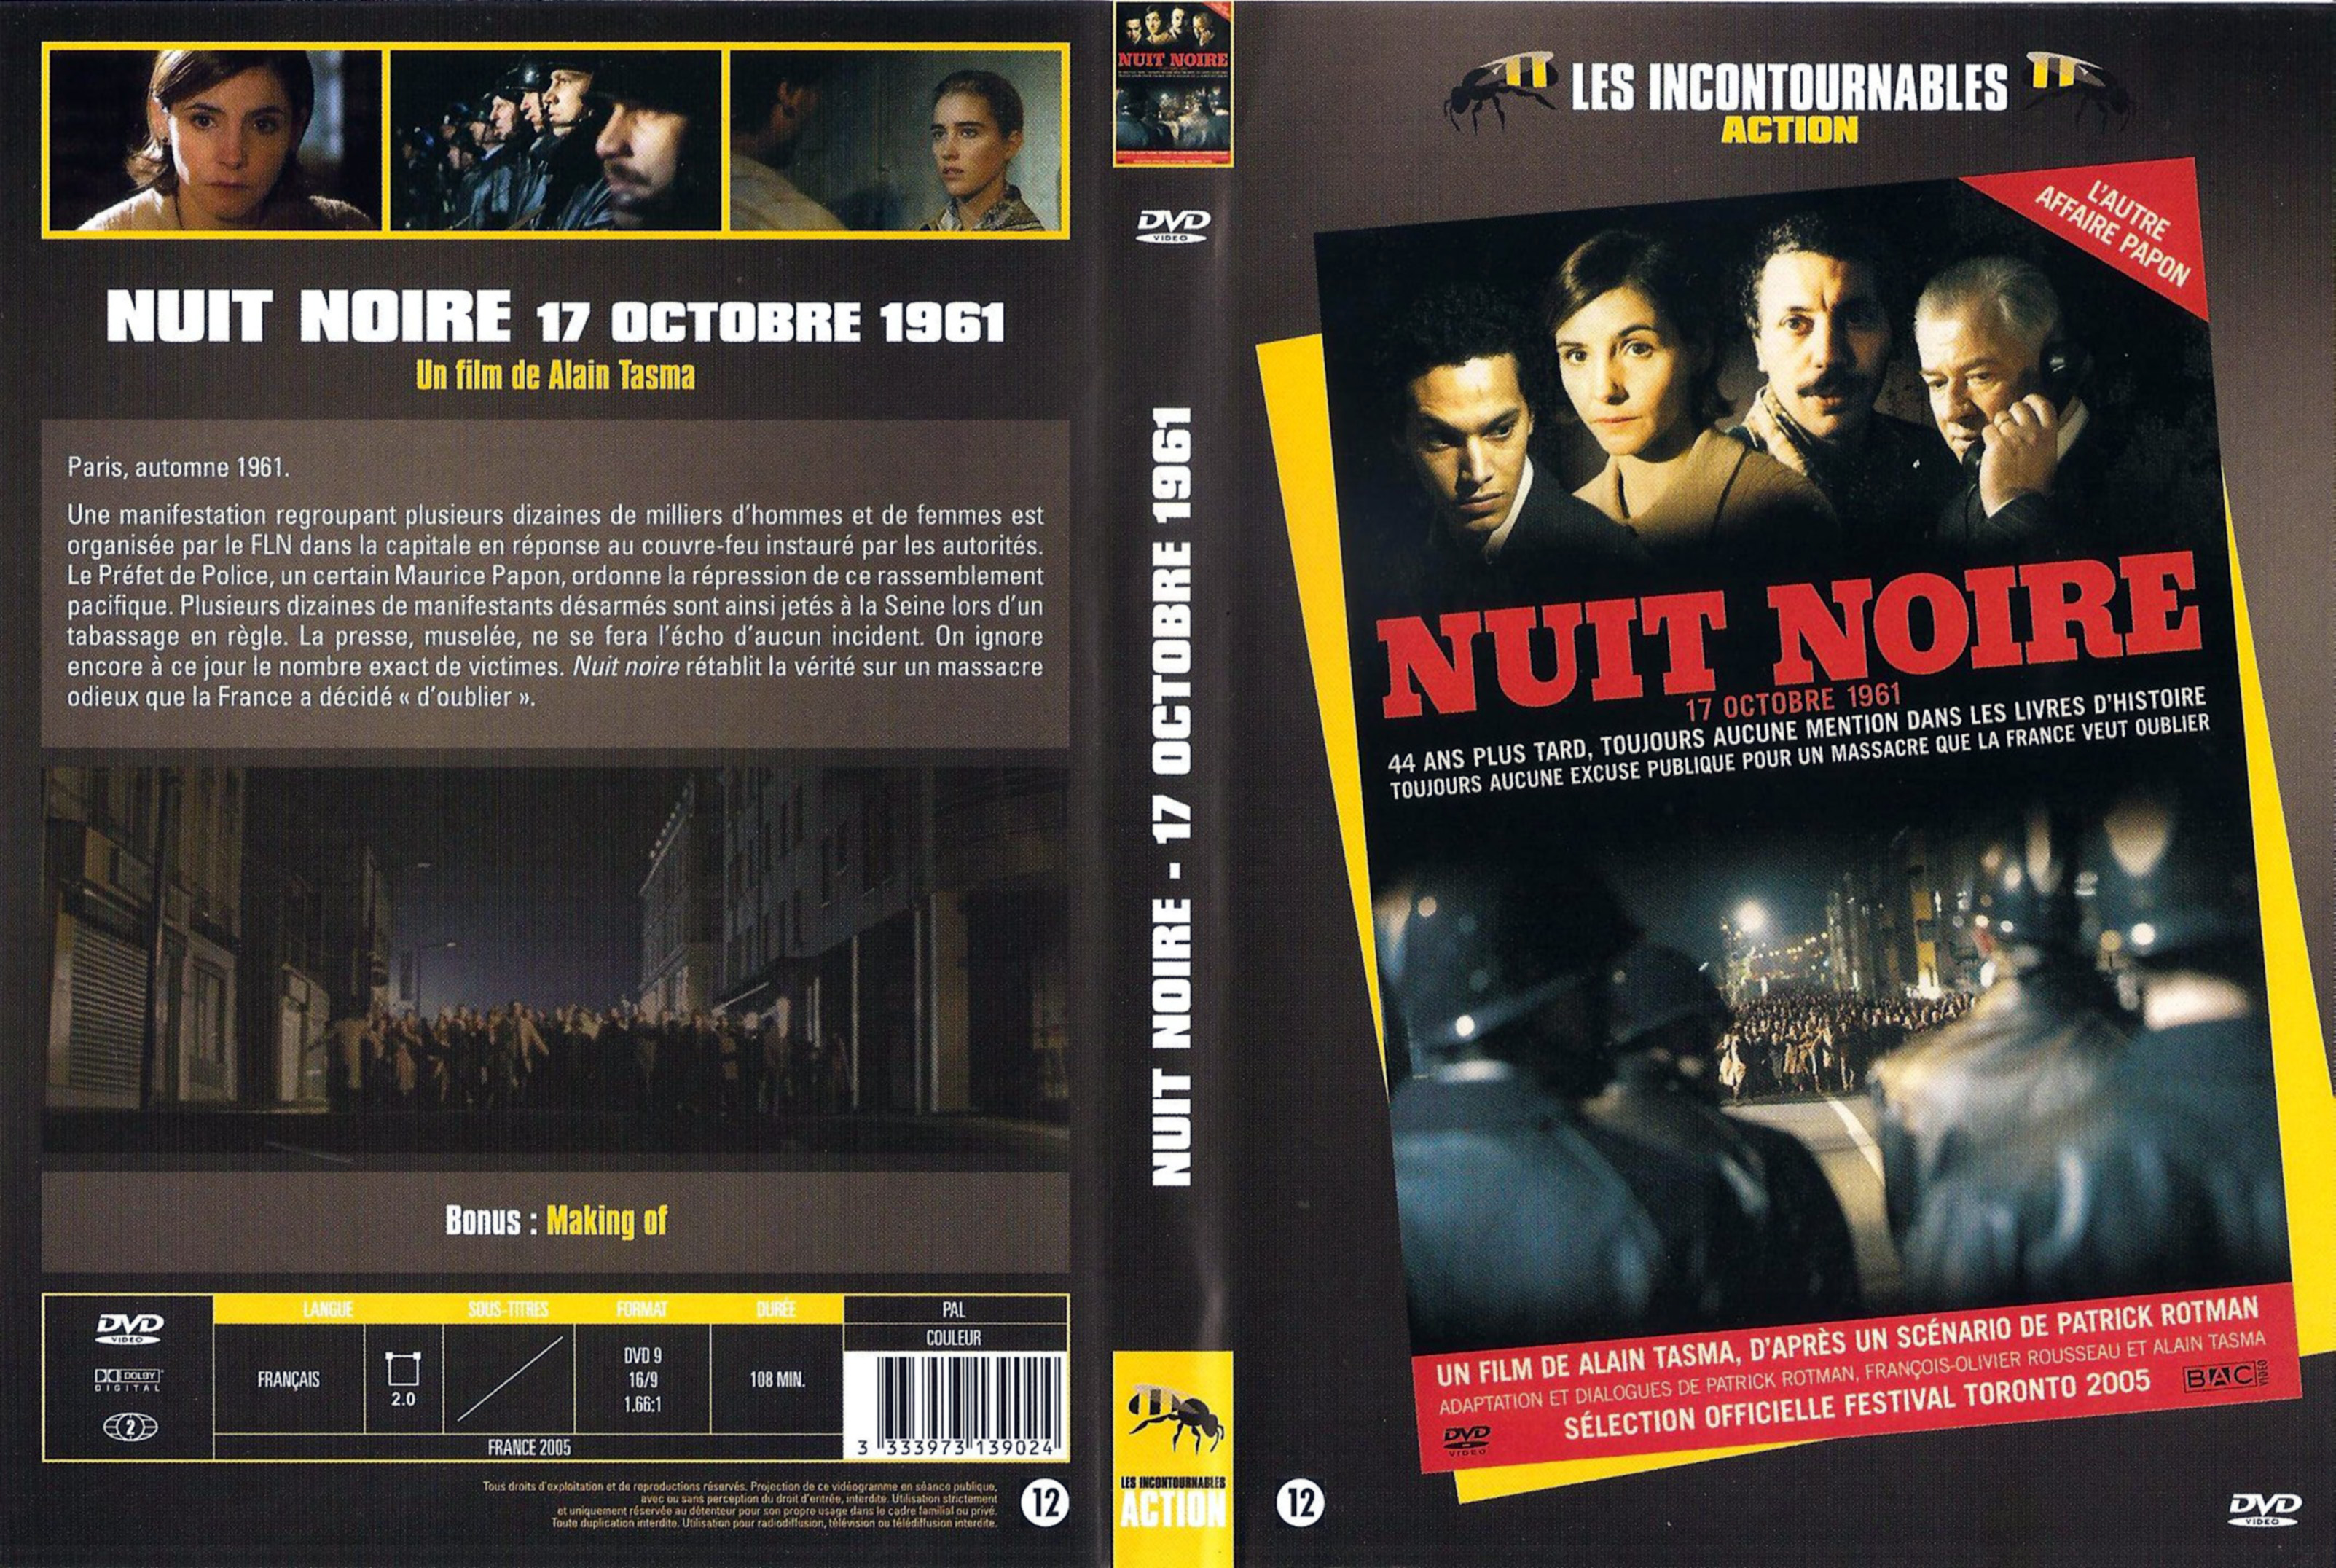 Jaquette DVD Nuit noire 17 Octobre 1961